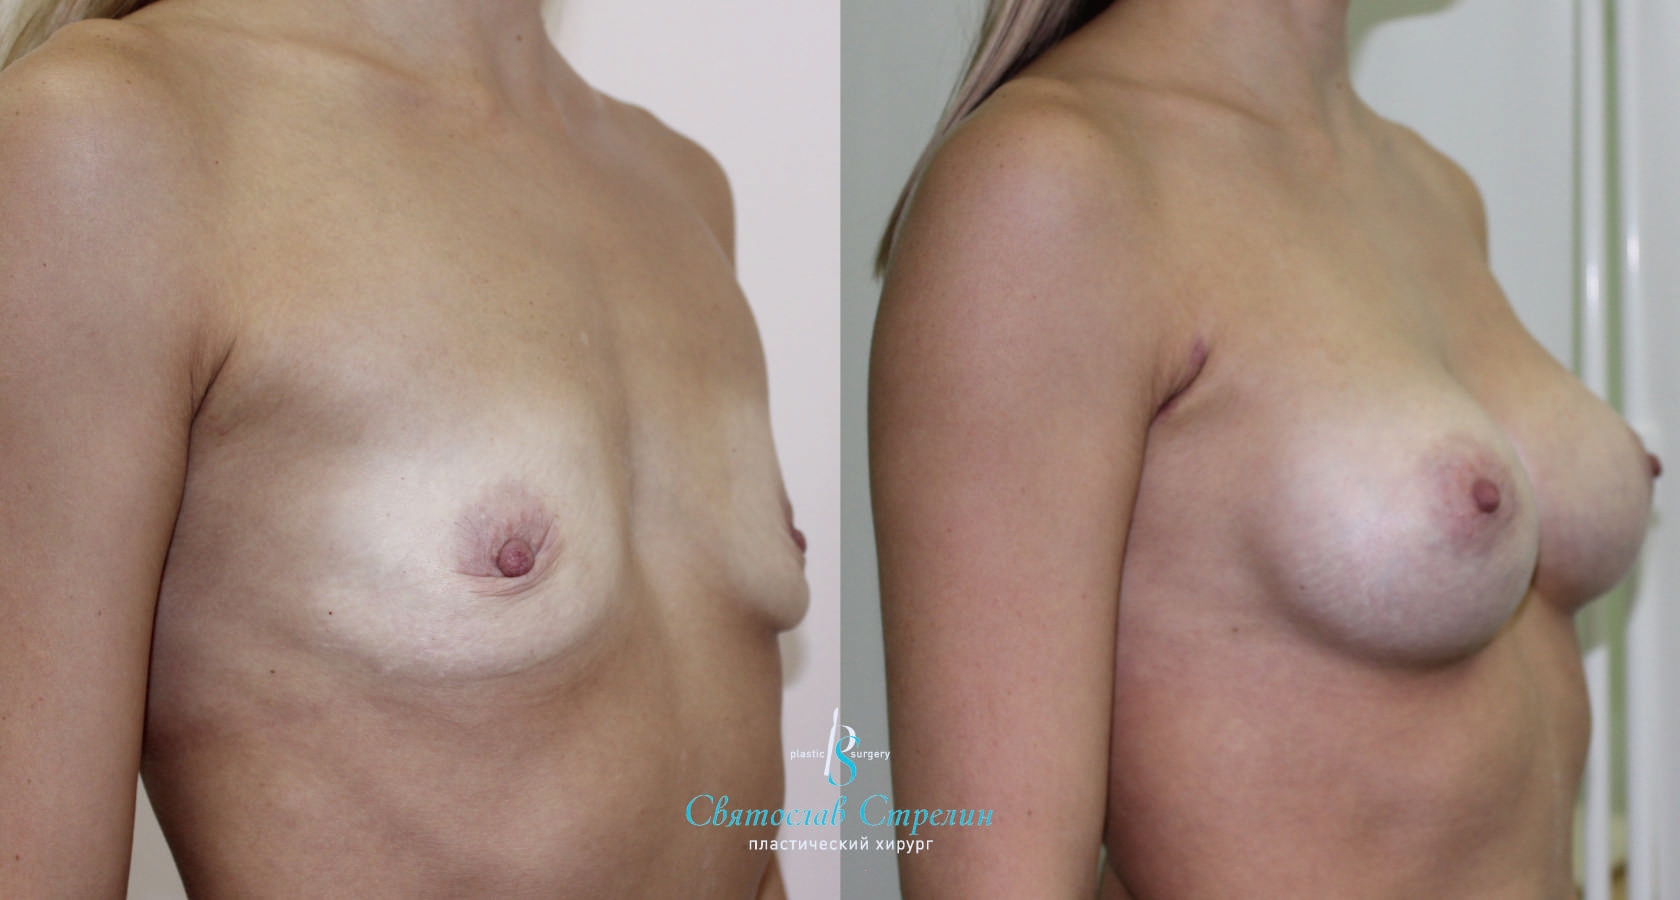 Увеличение груди, 2 месяца после операции, импланты Себбин 280 мл, анатомические, средняяв ысота, высокая проекция, доступ подмышечный